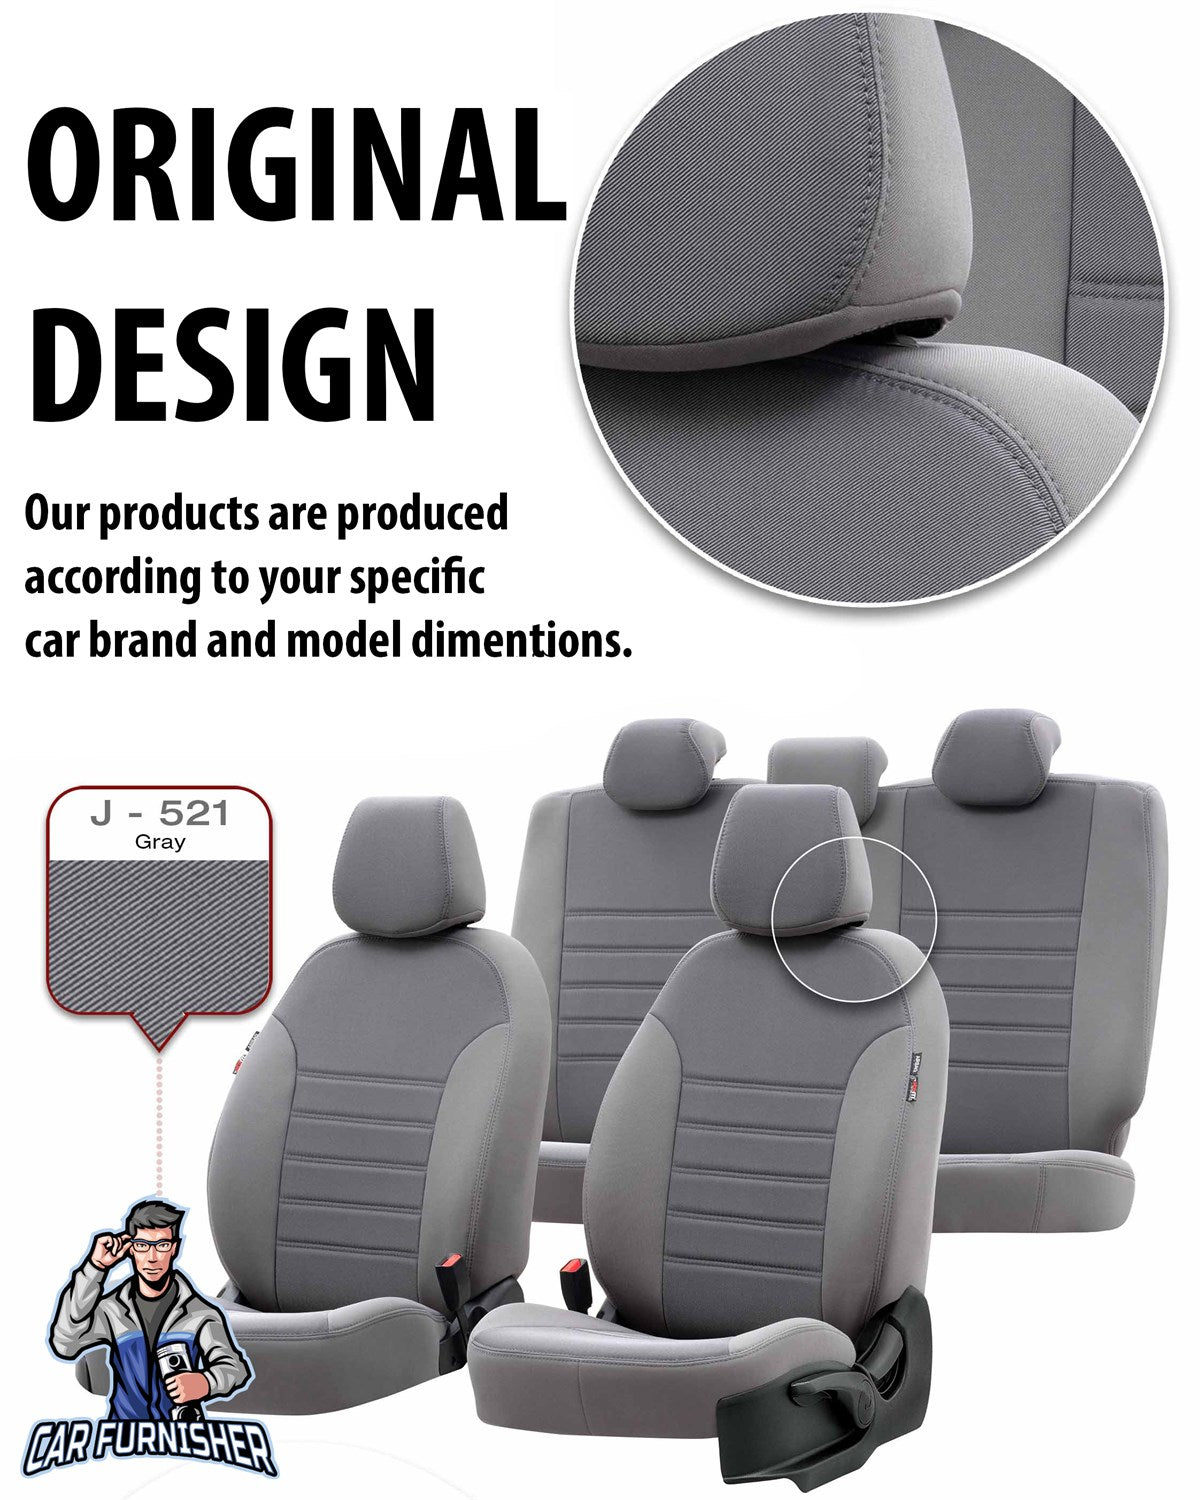 Toyota Camry Seat Cover Original Jacquard Design Red Jacquard Fabric